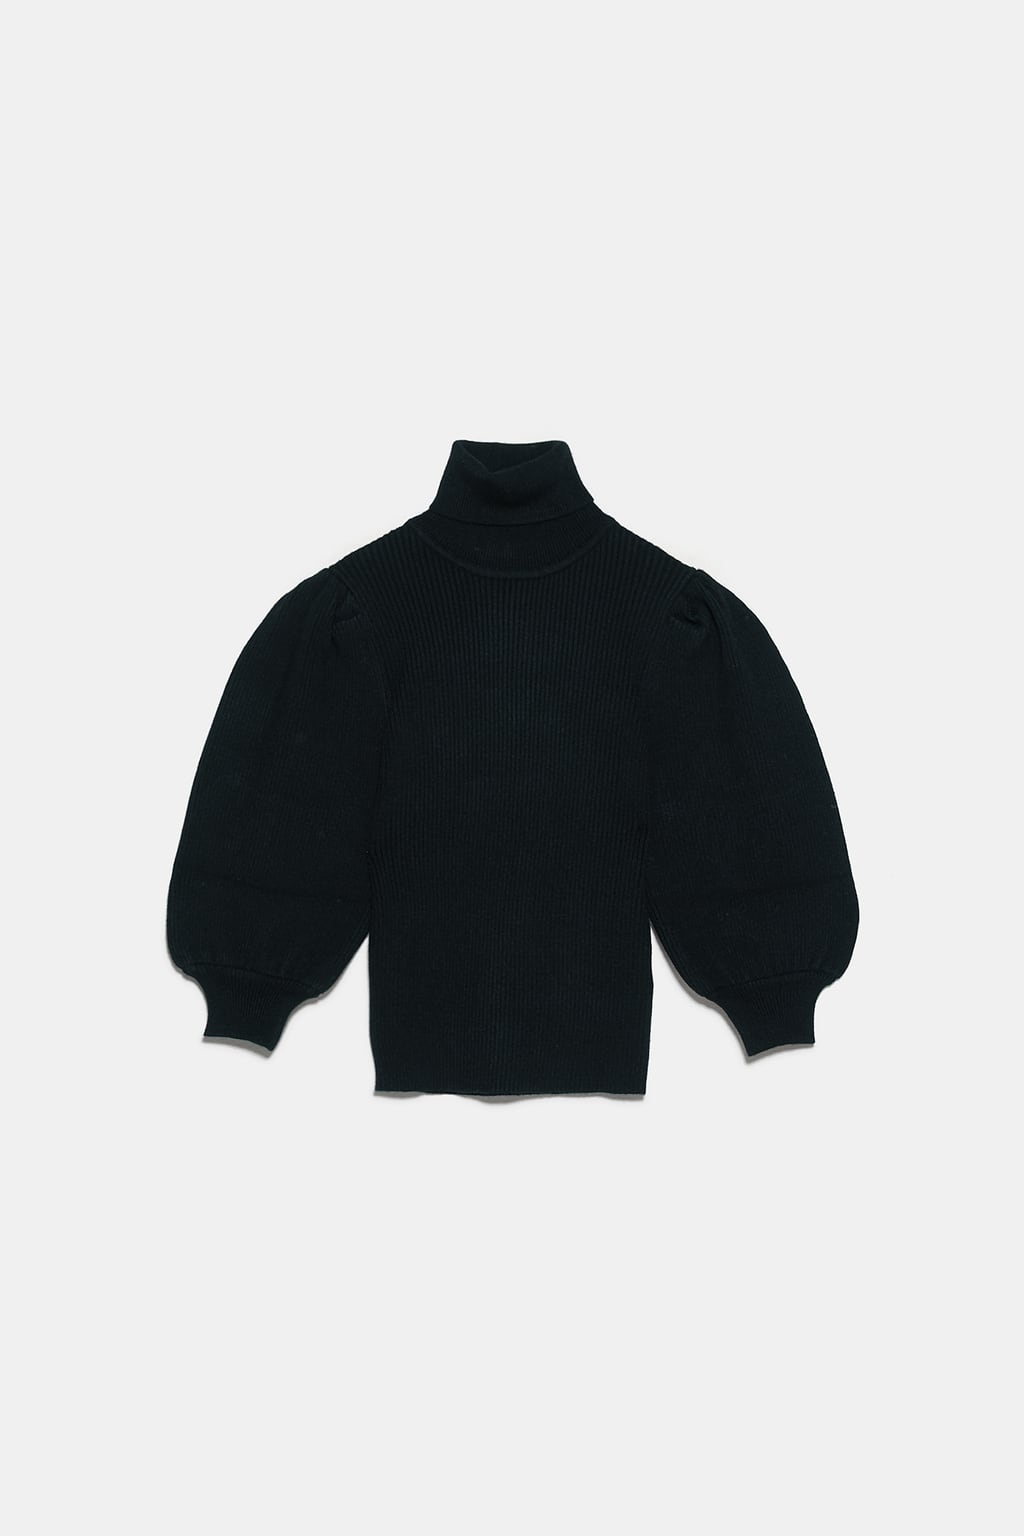 Пуловер Zara
Подарък, с който никога няма да сгрешим, е от рода на пуловерите. Онова, на което трябва да обърнем внимание, е различността на модела, в случая харесан заради високото поло, подпухналия буфан ръкав, структурирания торс, както и сбитата плетка в дълбок бургундски нюанс. 
Цена: 49,95 лв.